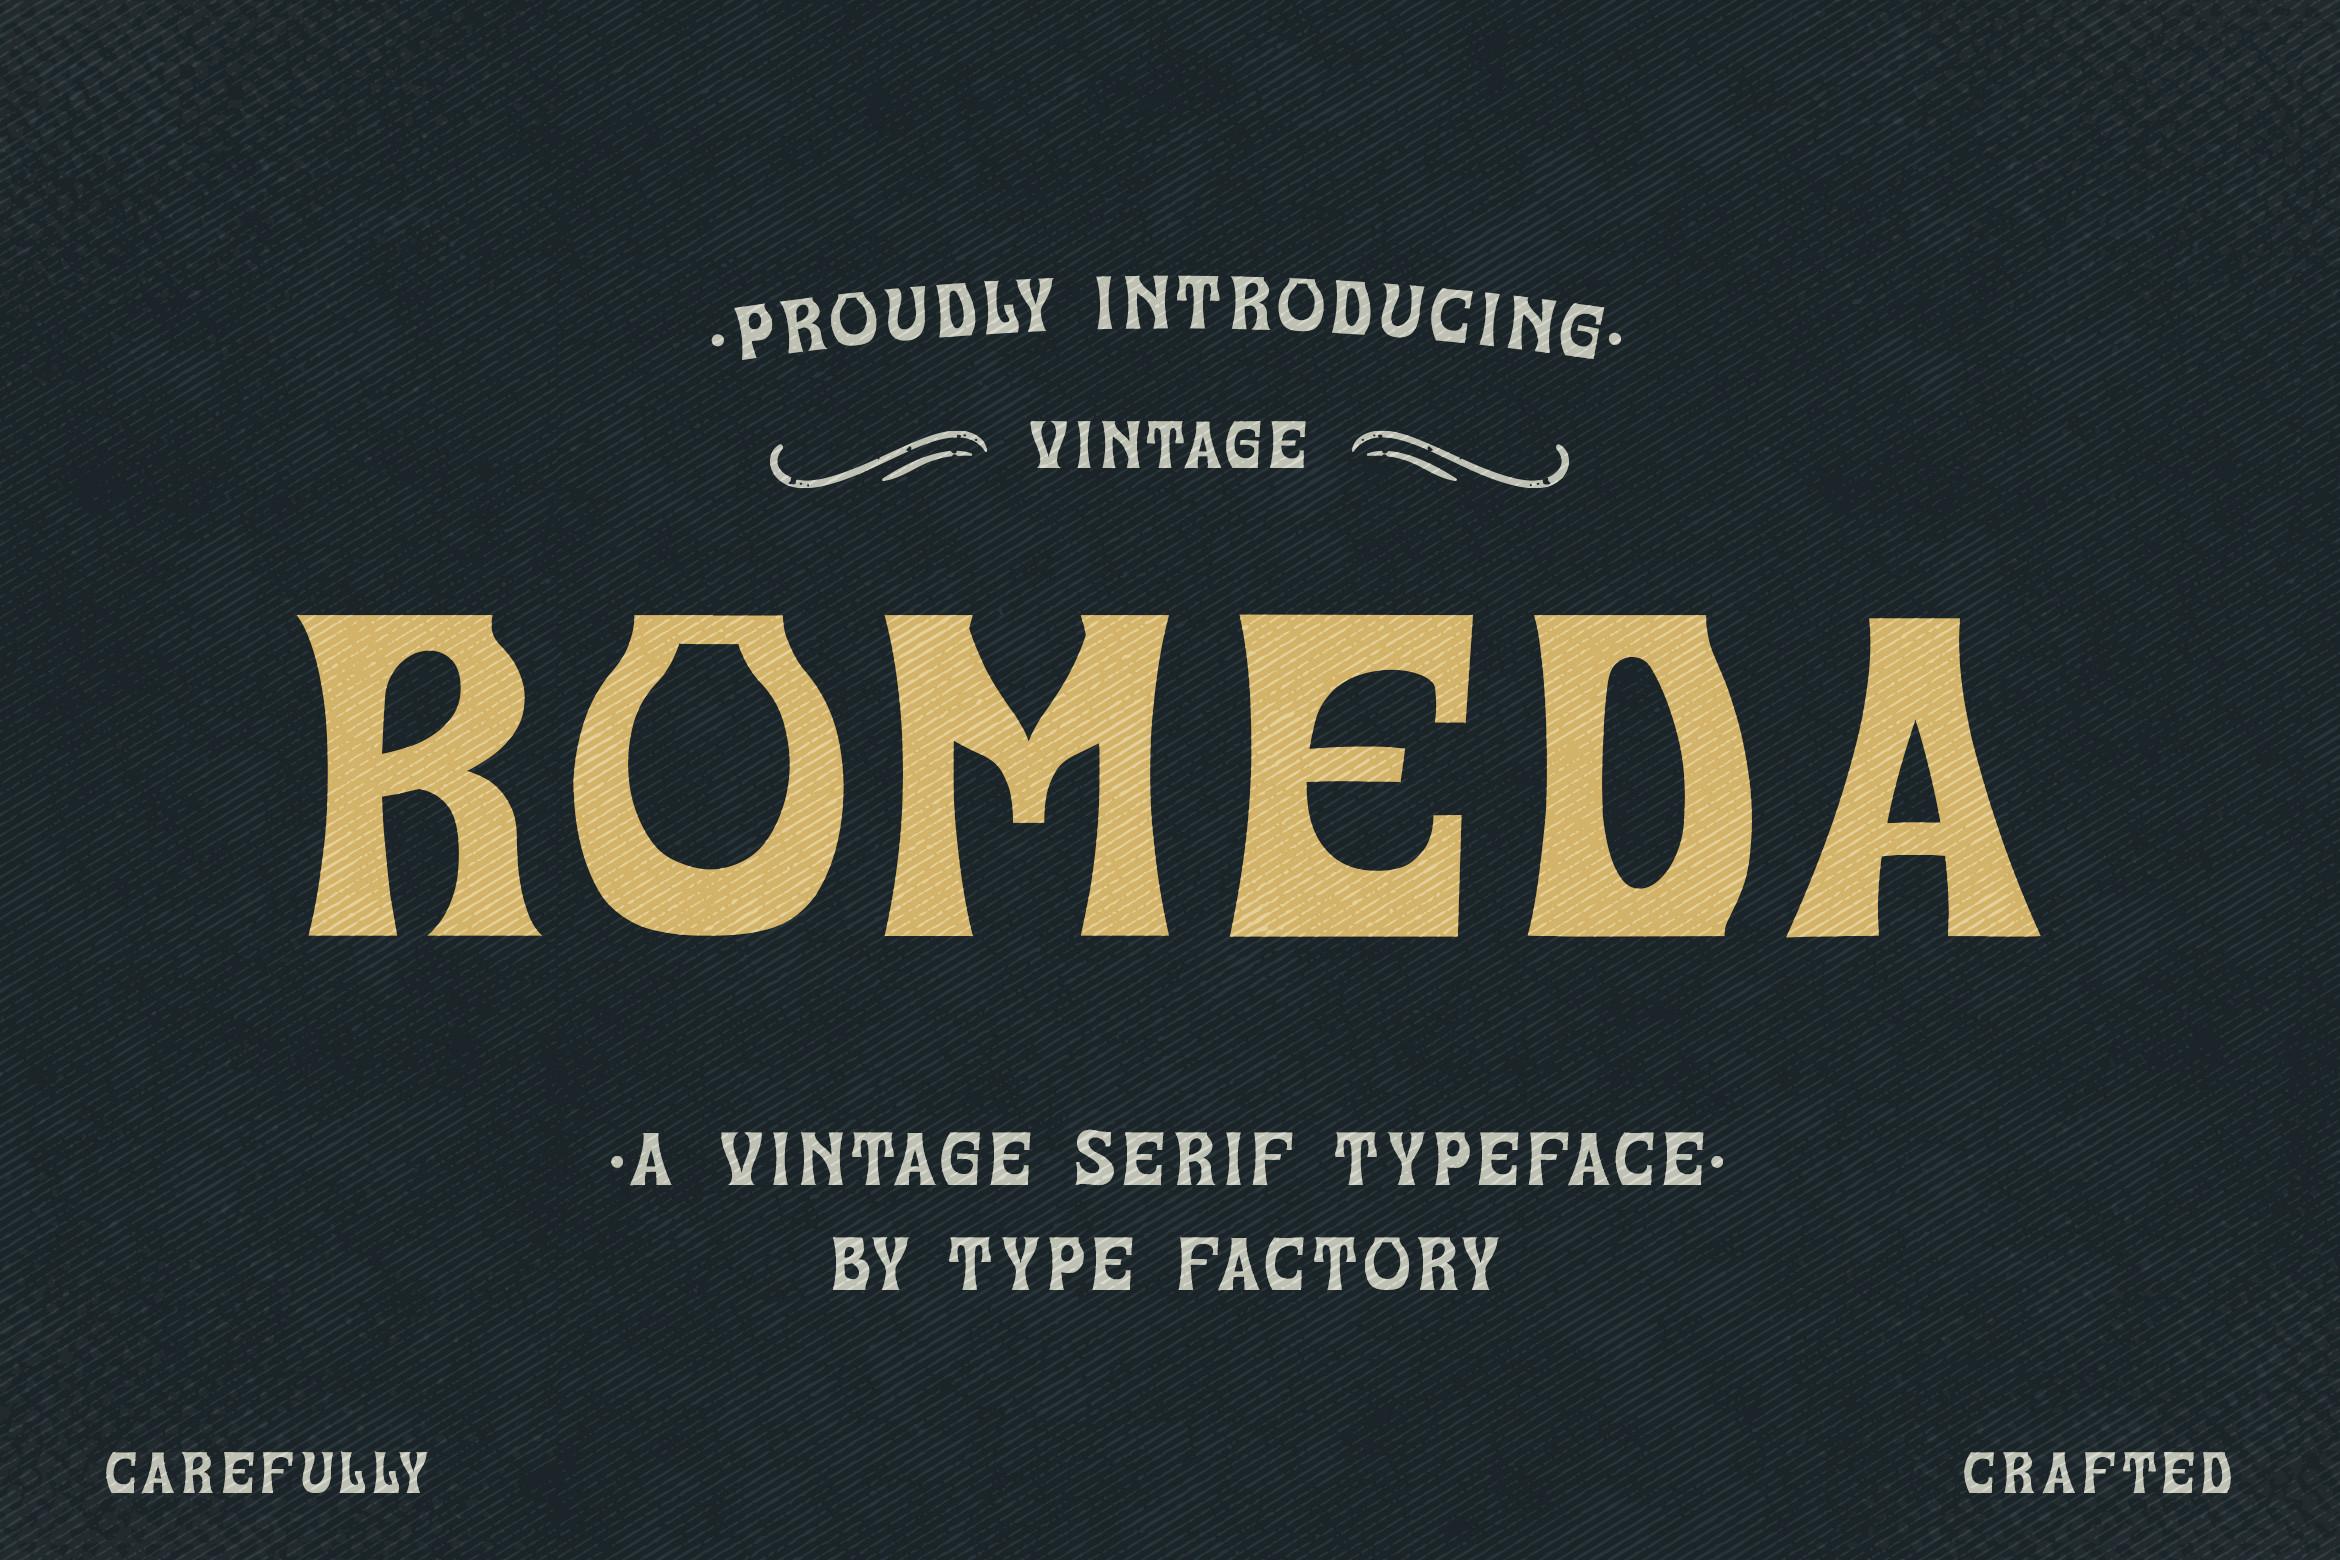 Romeda Font